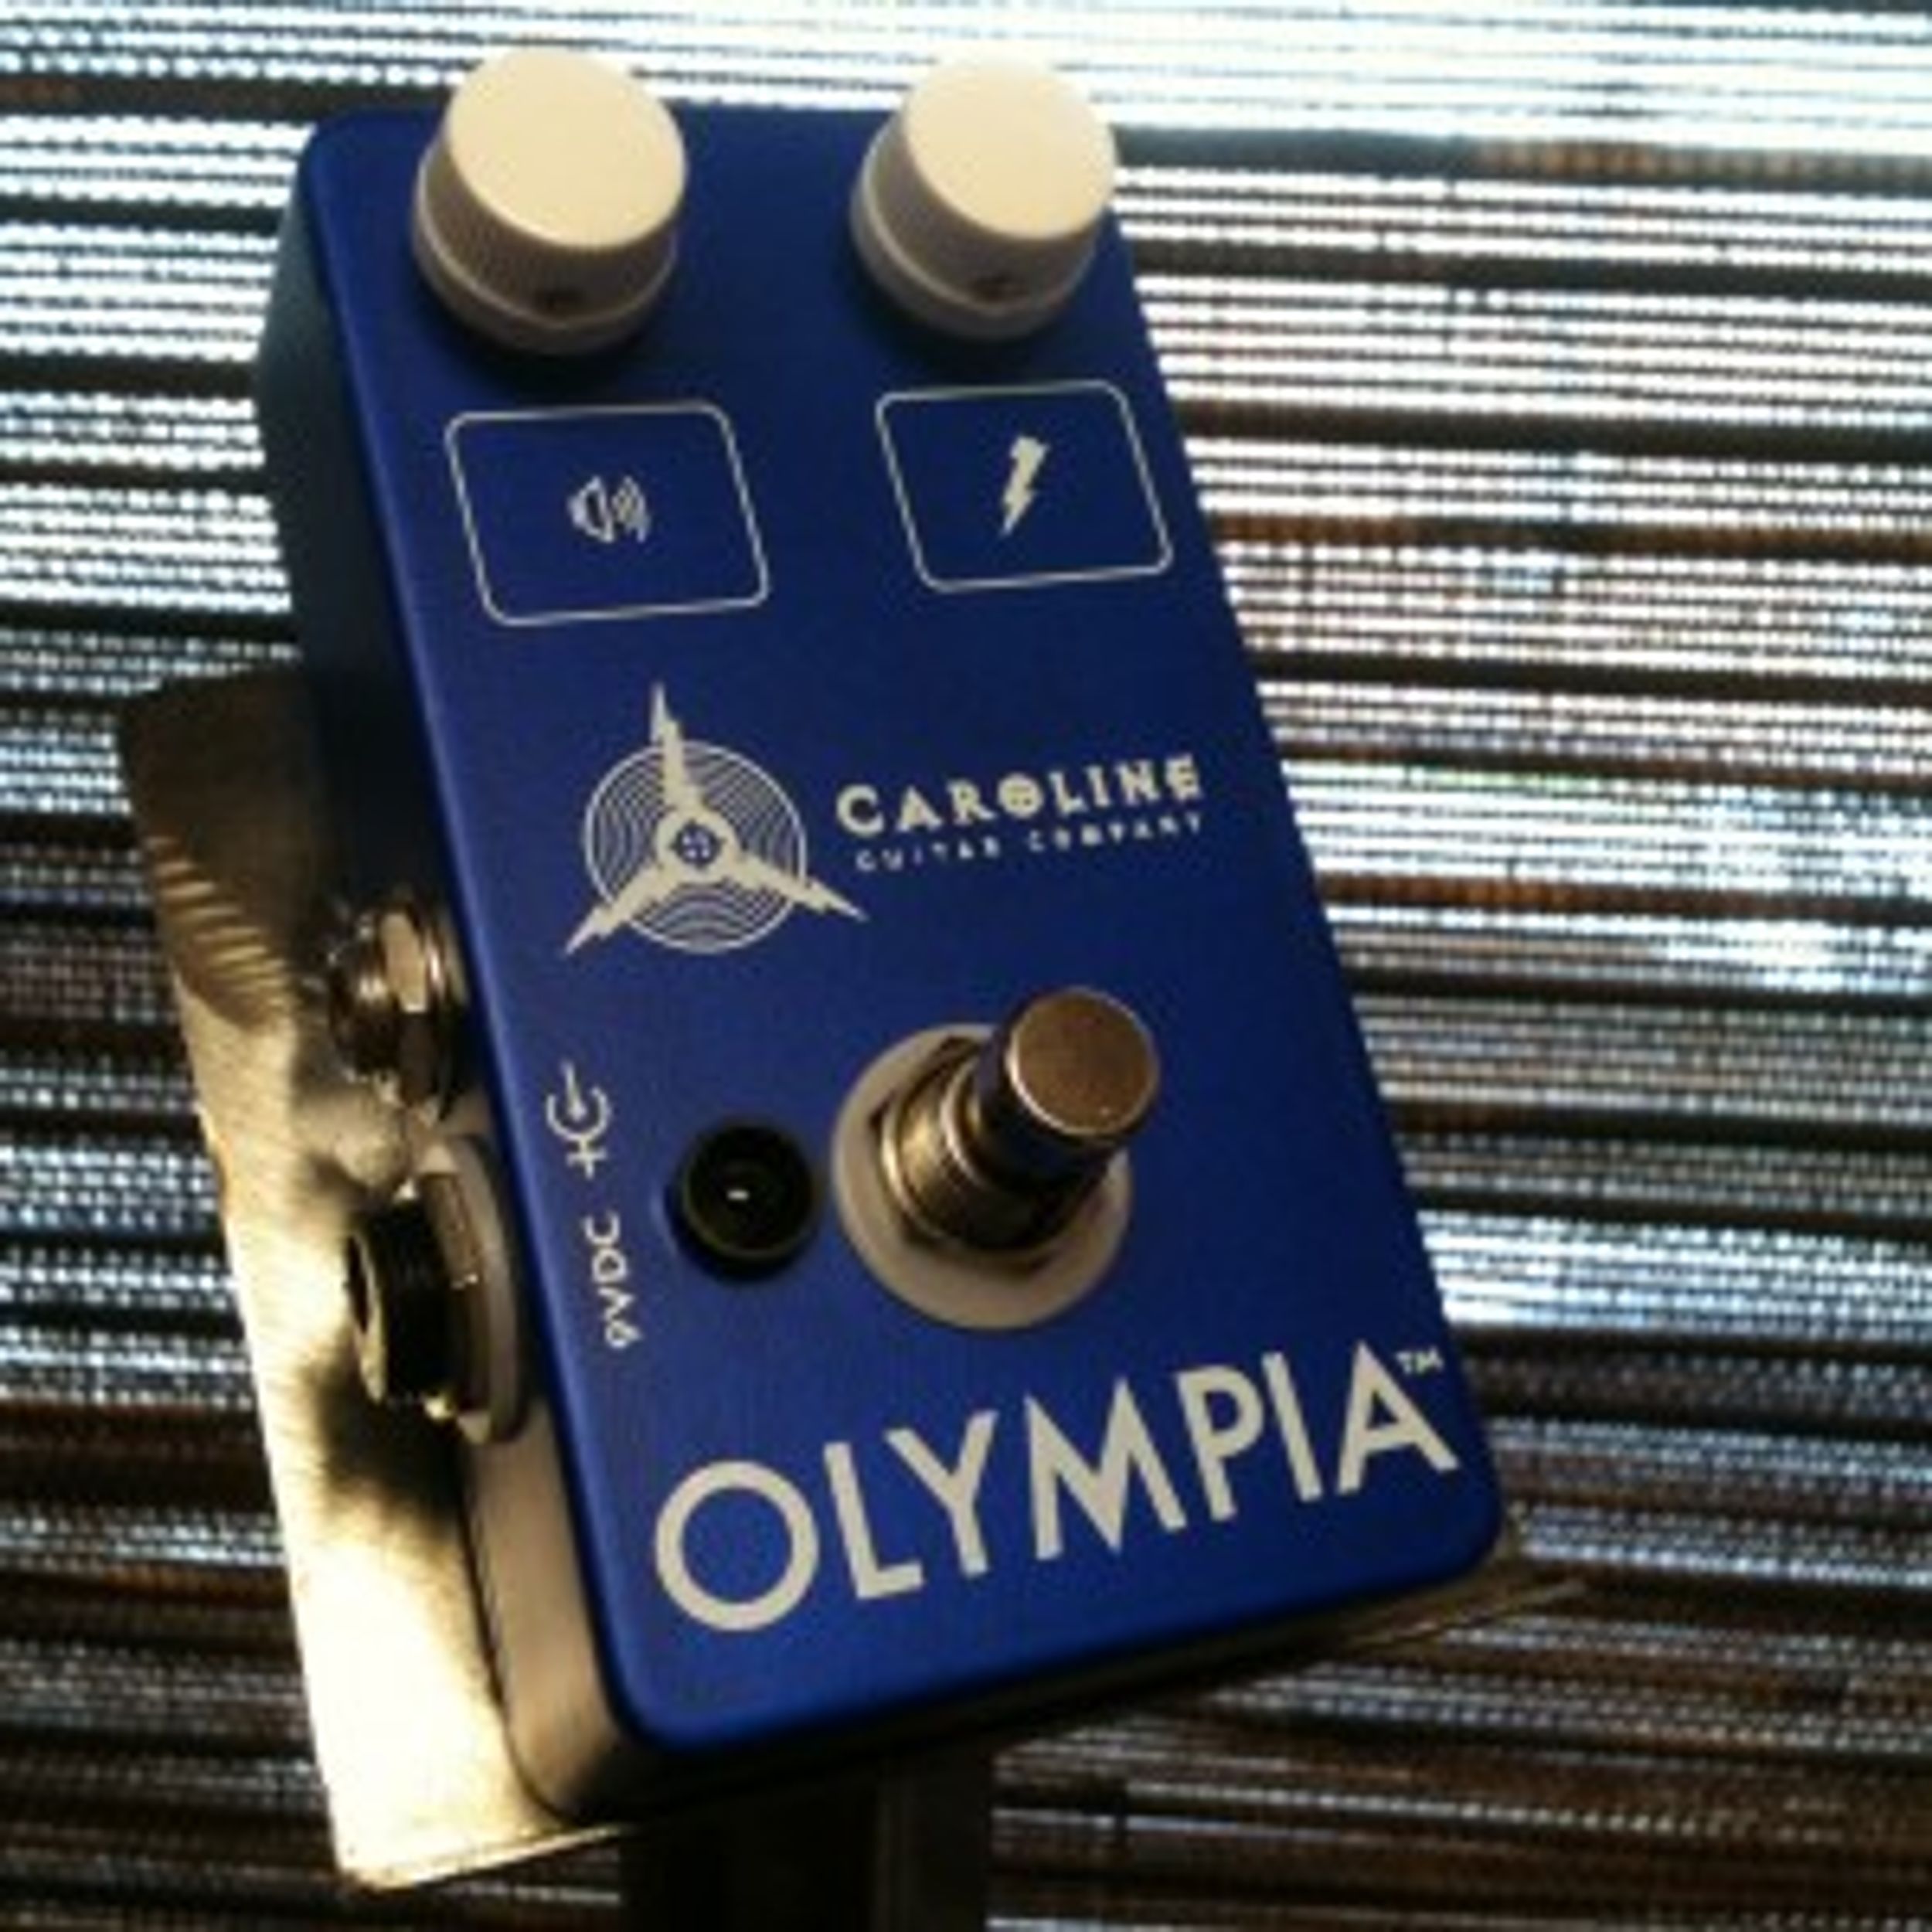 Caroline Guitar Company Releases Olympia Pedal With Kickstarter.com